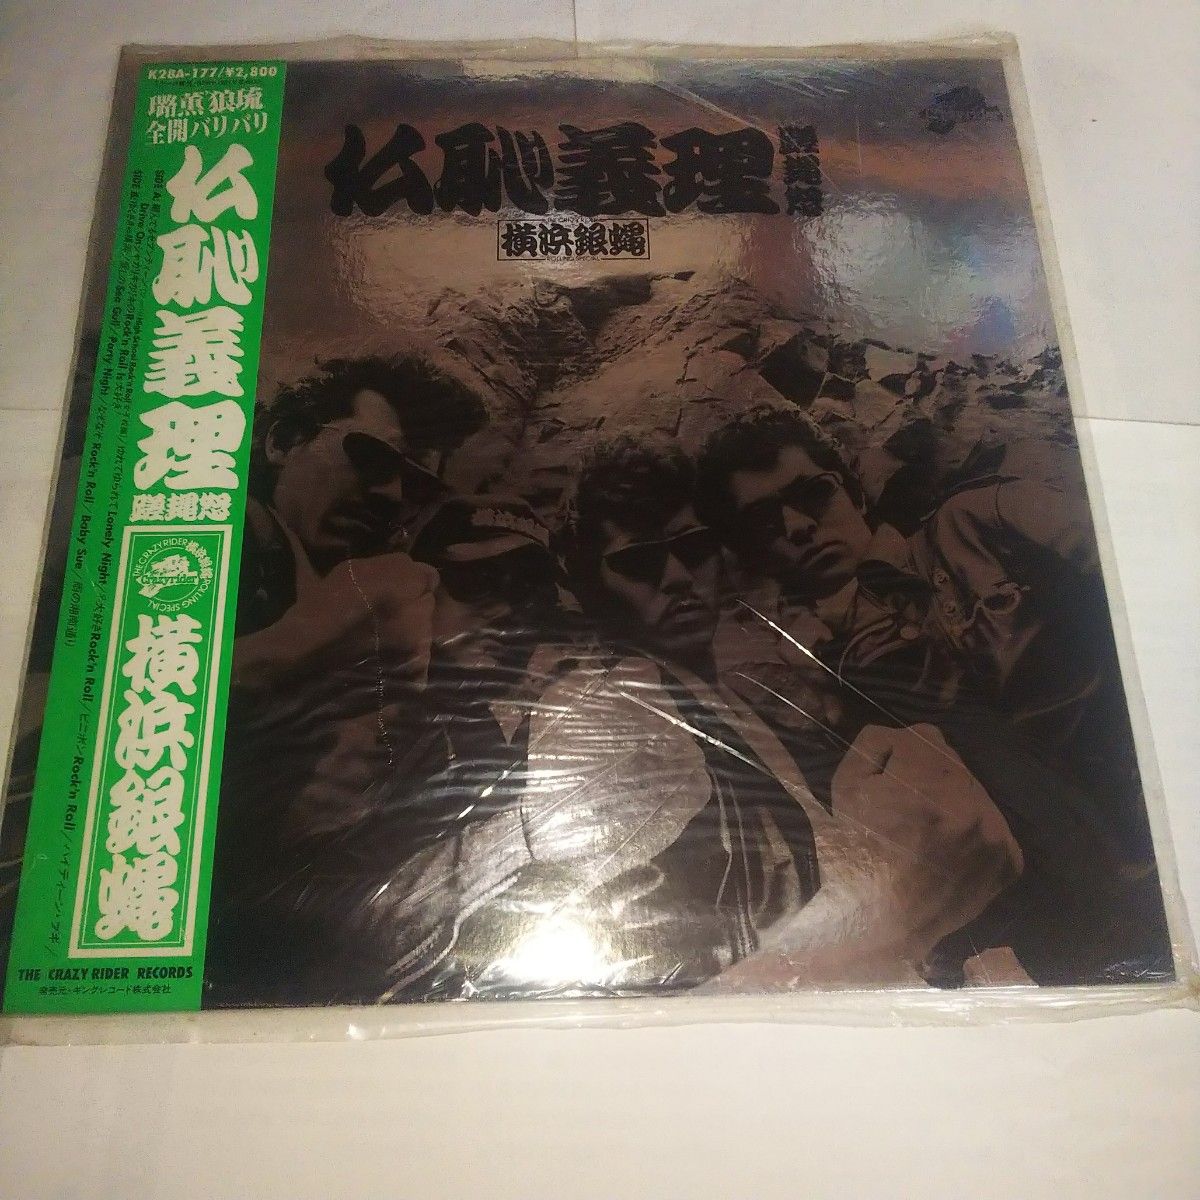 横浜銀蝿、銀蝿一家、ジョニー 、ハンカチ LPレコード4枚